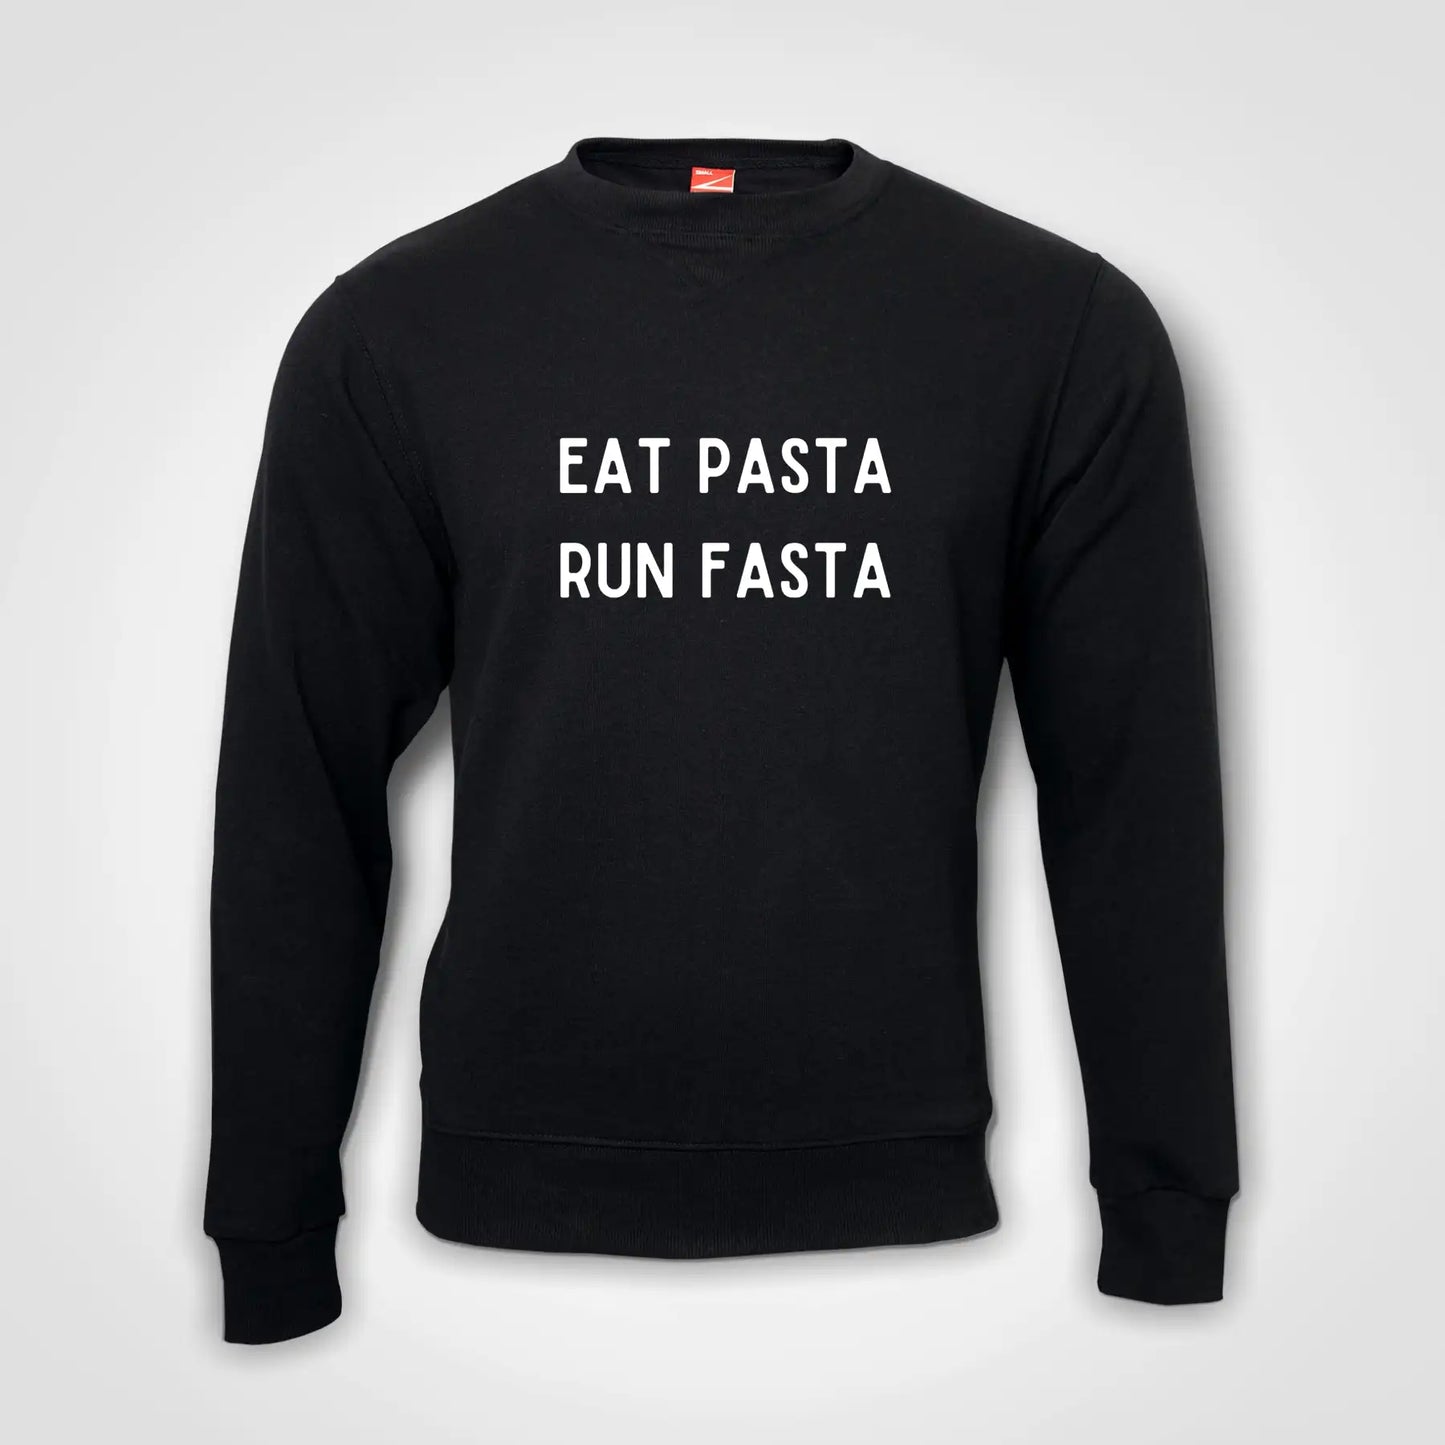 Eat Pasta Run Fasta Sweater